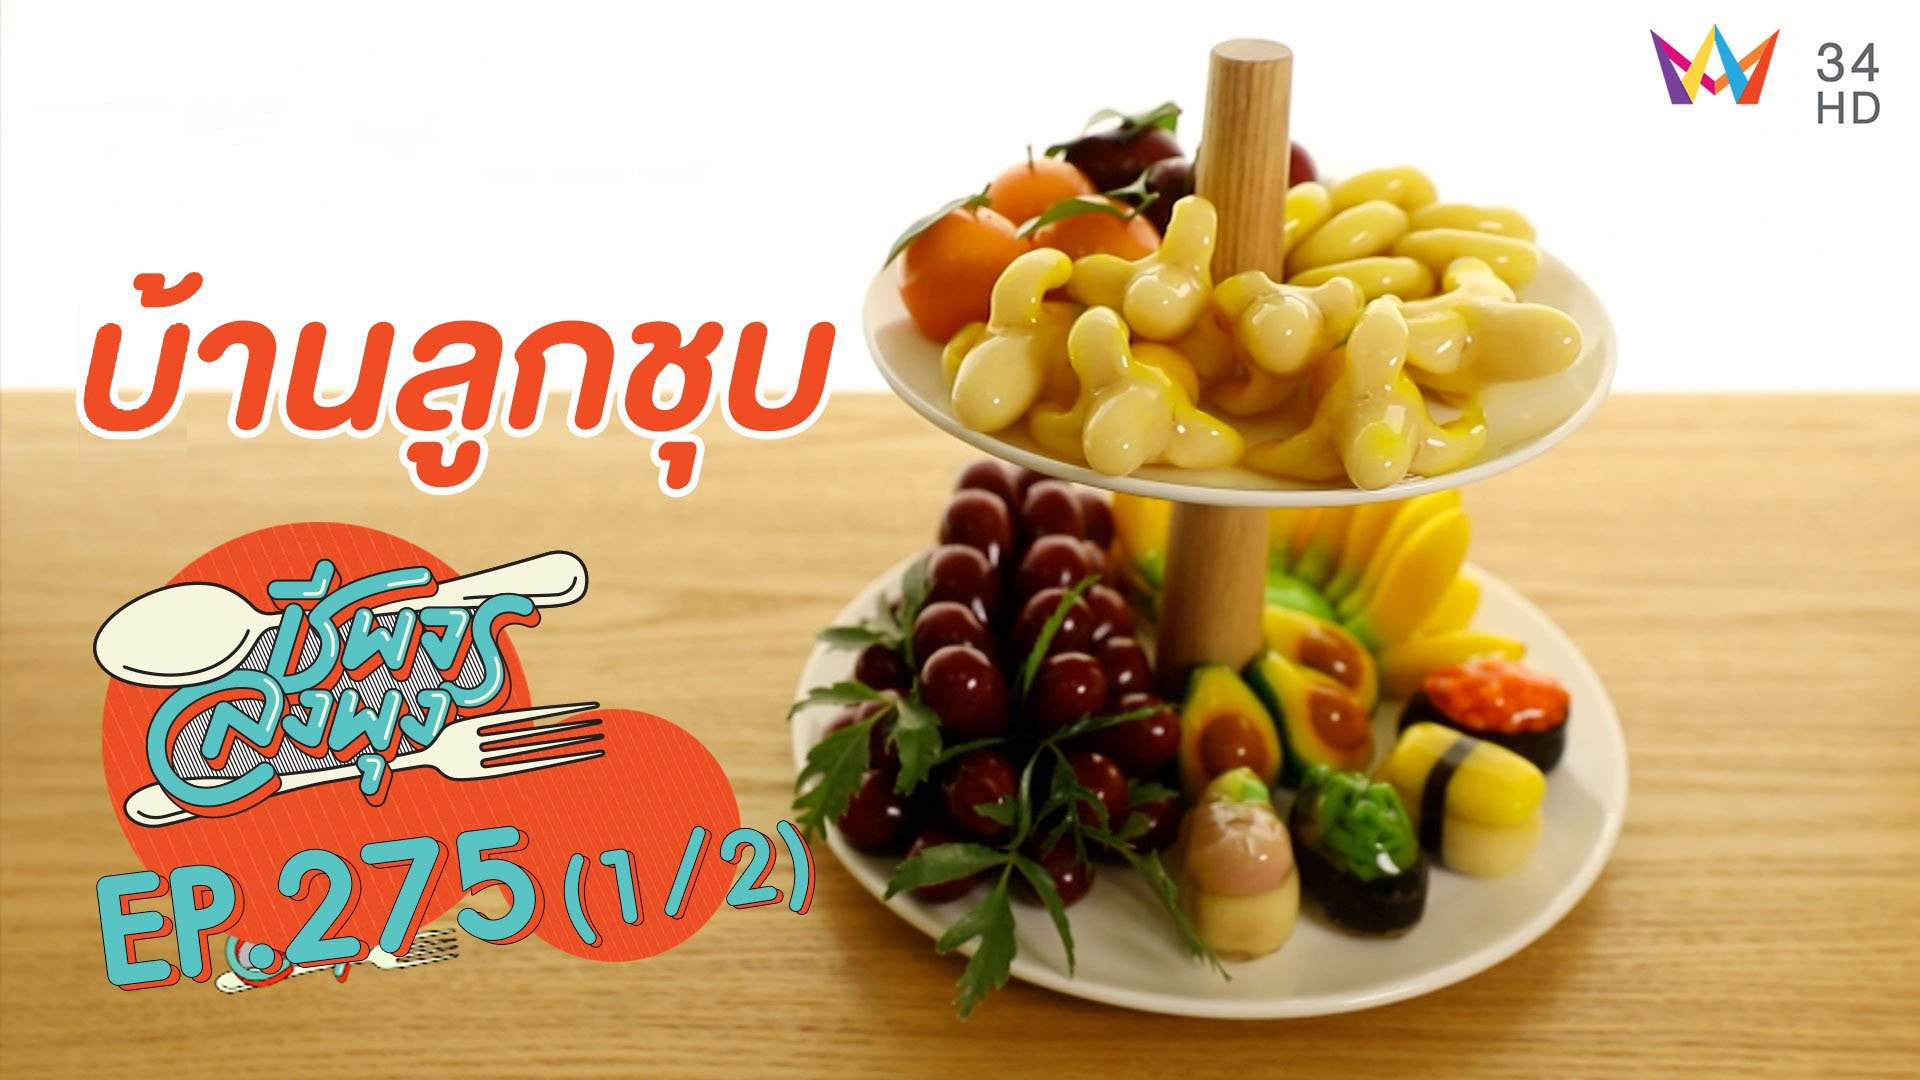 ตอกย้ำซ้ำความอร่อย 'บ้านลูกชุบ' | ชีพจรลงพุง | 7 ก.พ. 64 (1/2) | AMARIN TVHD34